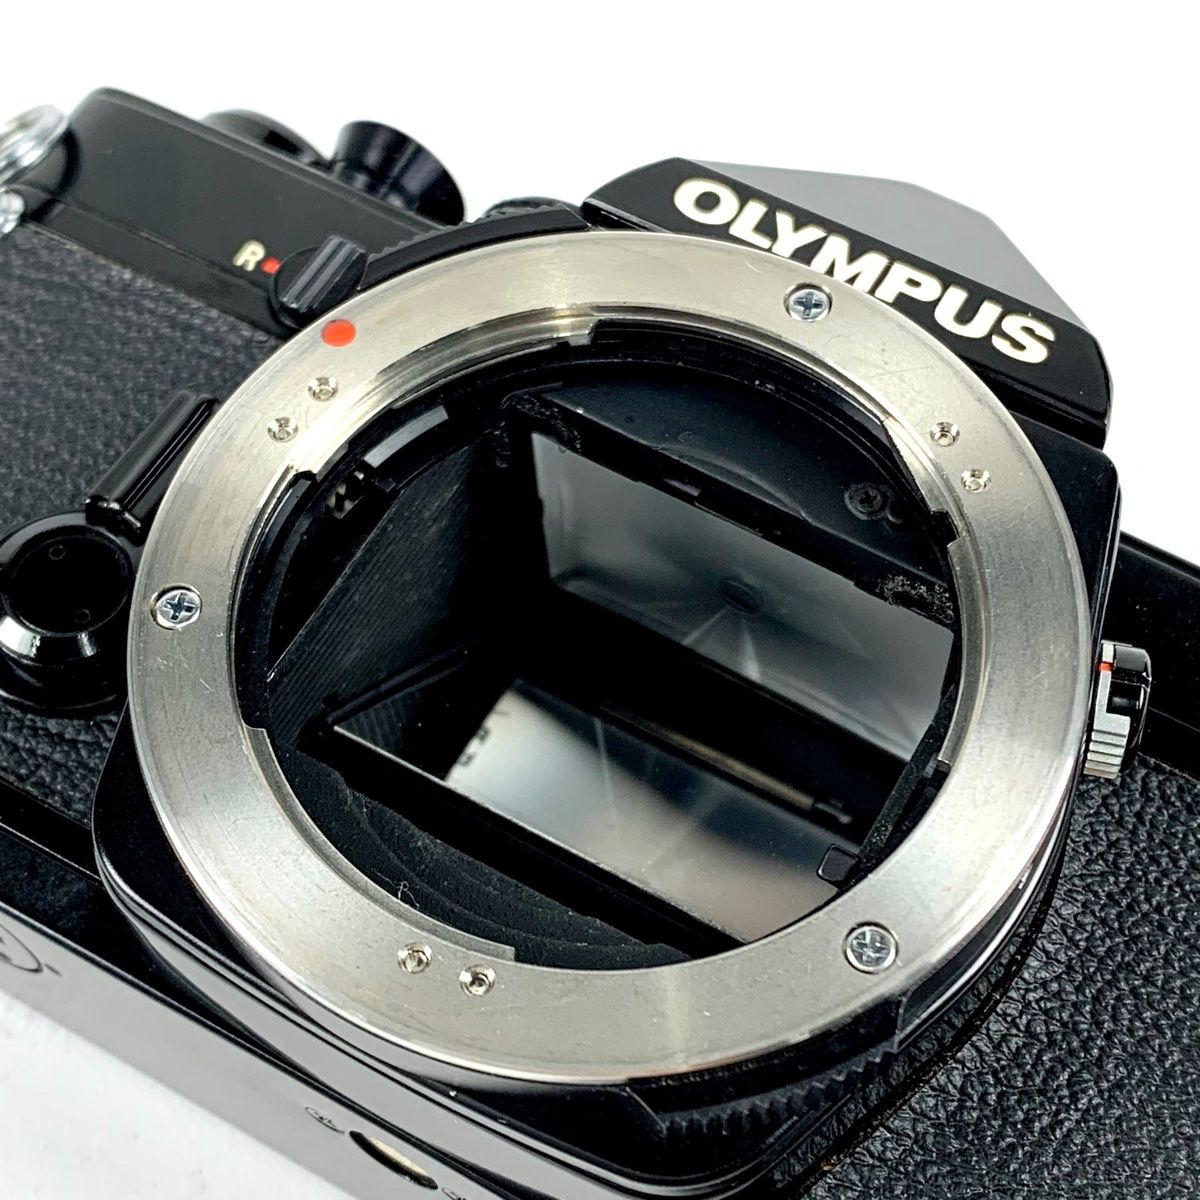 オリンパス OLYMPUS OM-1 ブラック + F.ZUIKO AUTO-S 50mm F1.8